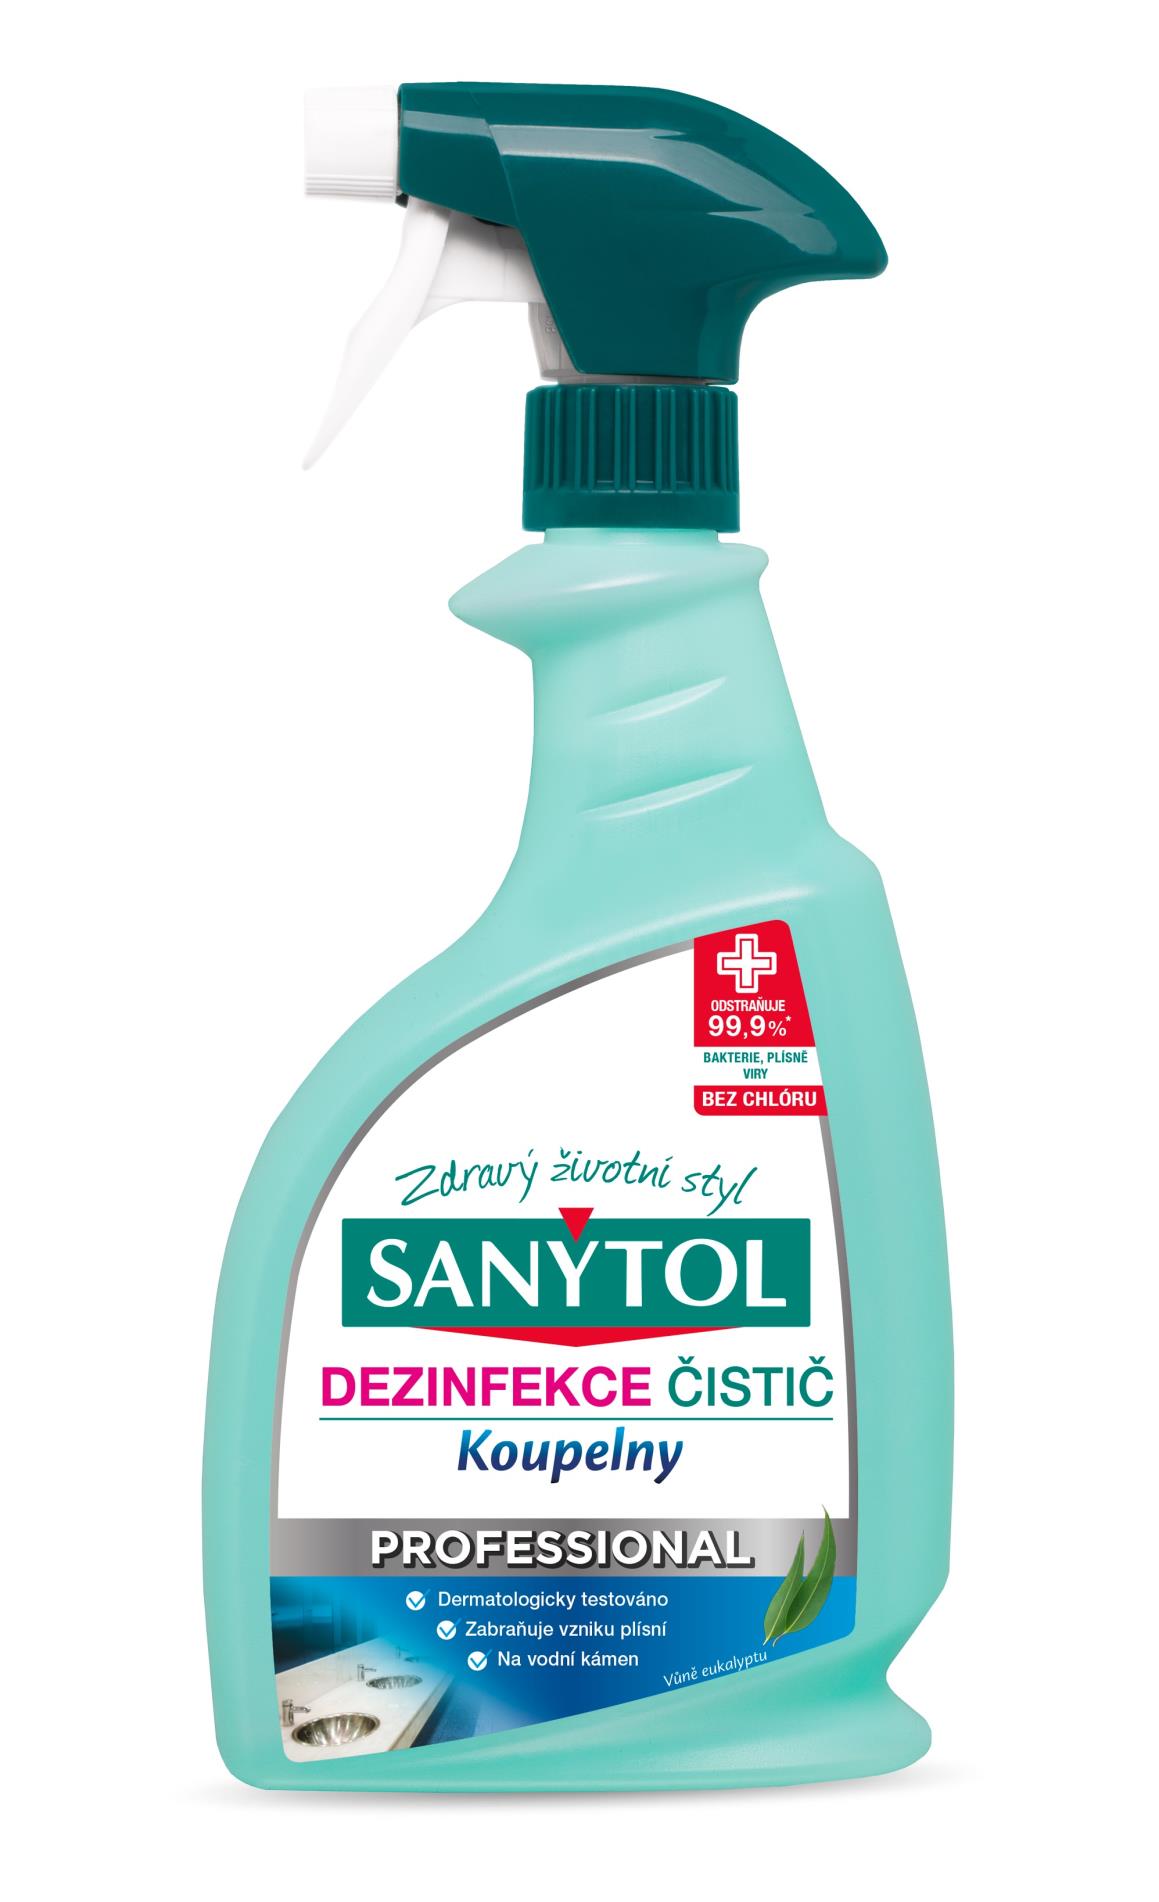 Sanytol Dezinfekční čistič na koupelny Sanytol Professional - 750 ml